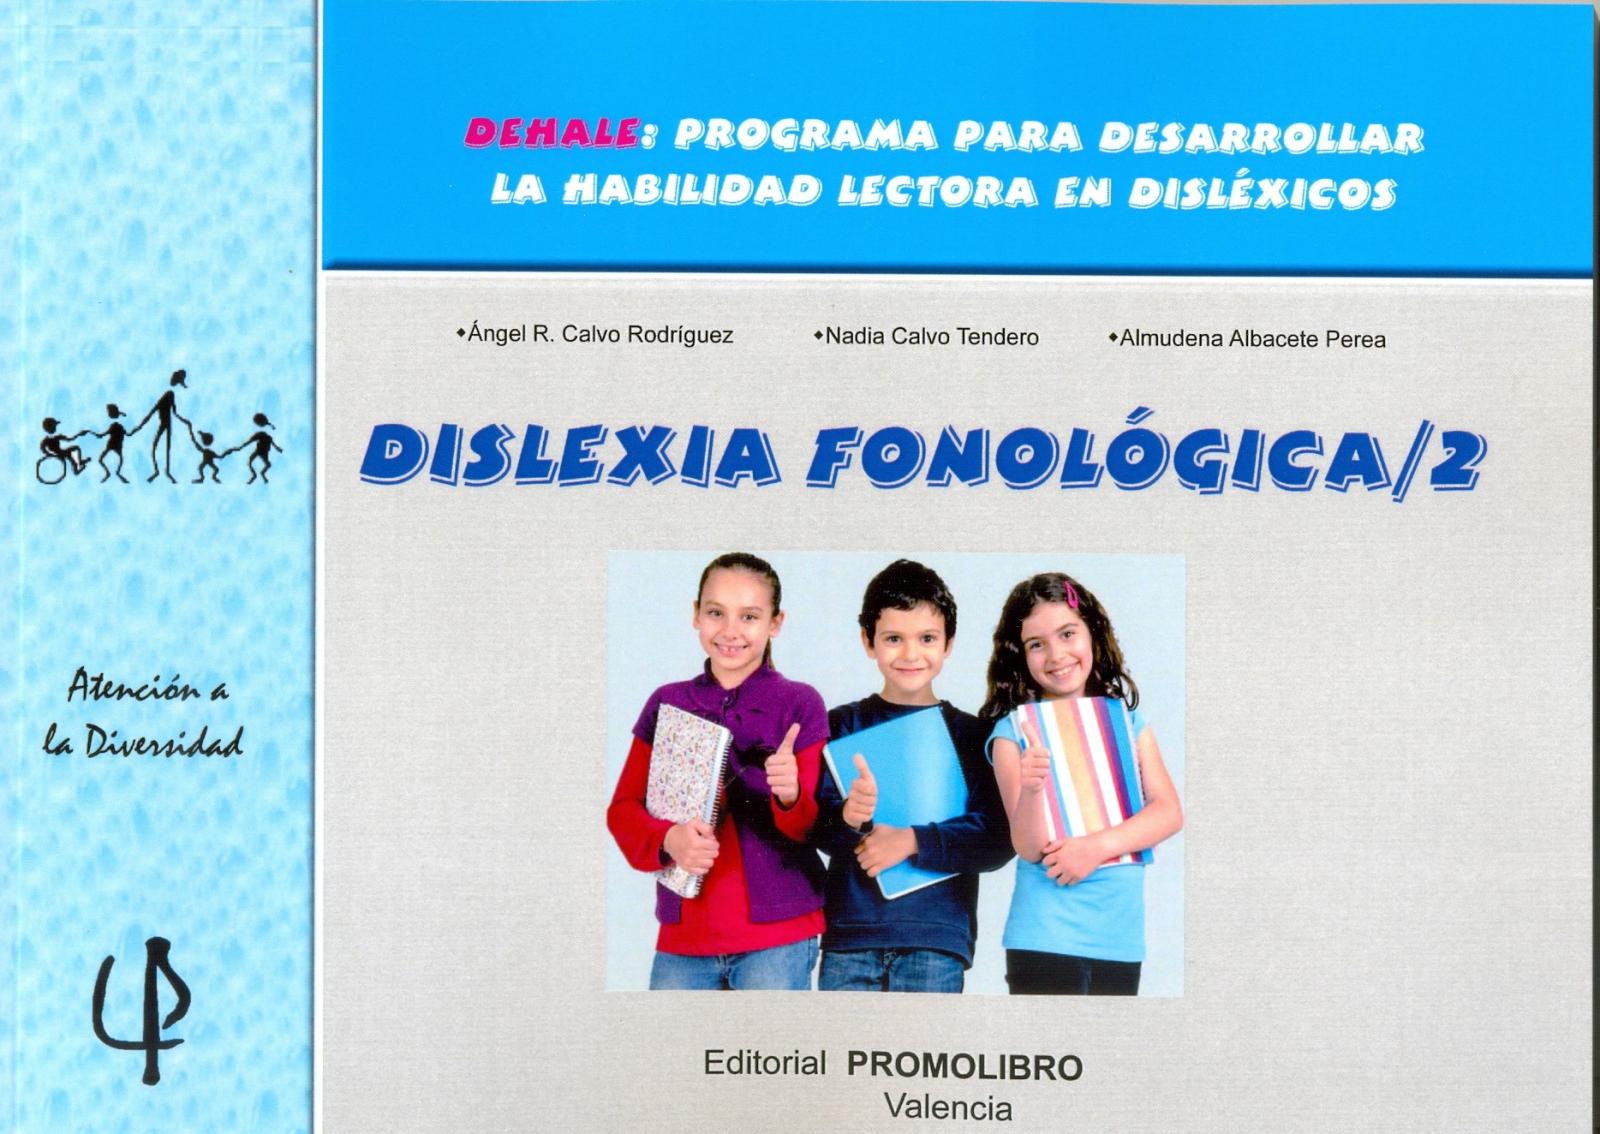 216.- DISLEXIA FONOLÓGICA 2. DEHALE: Programa para desarrollar la habilidad lectora en disléxicos